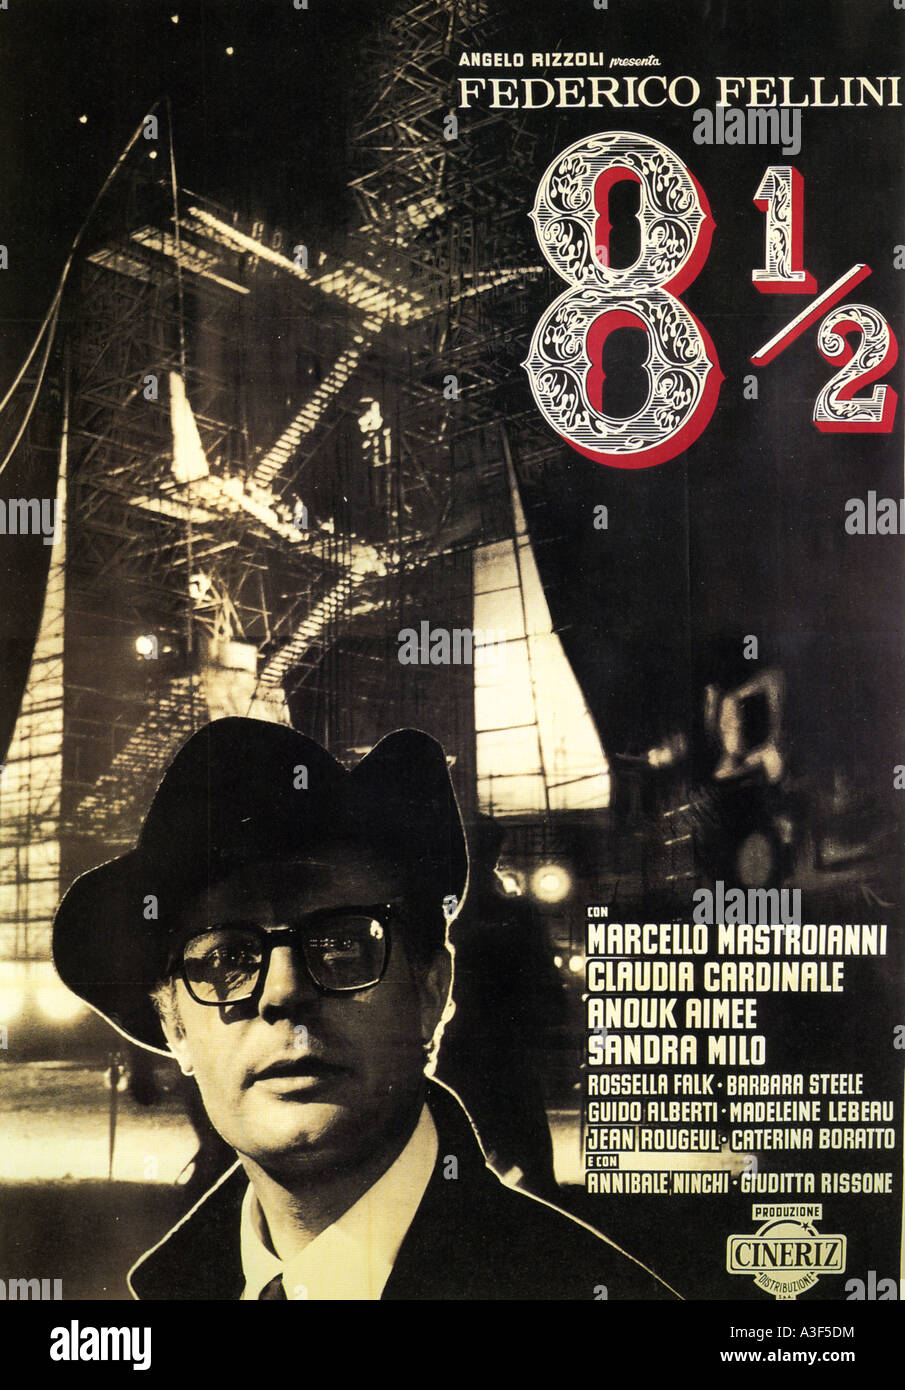 Otto e mezzo - 8 1/2 - poster per 1963 Cineriz film con Marcello  Mastroianni con la regia di Federico Fellini Foto stock - Alamy